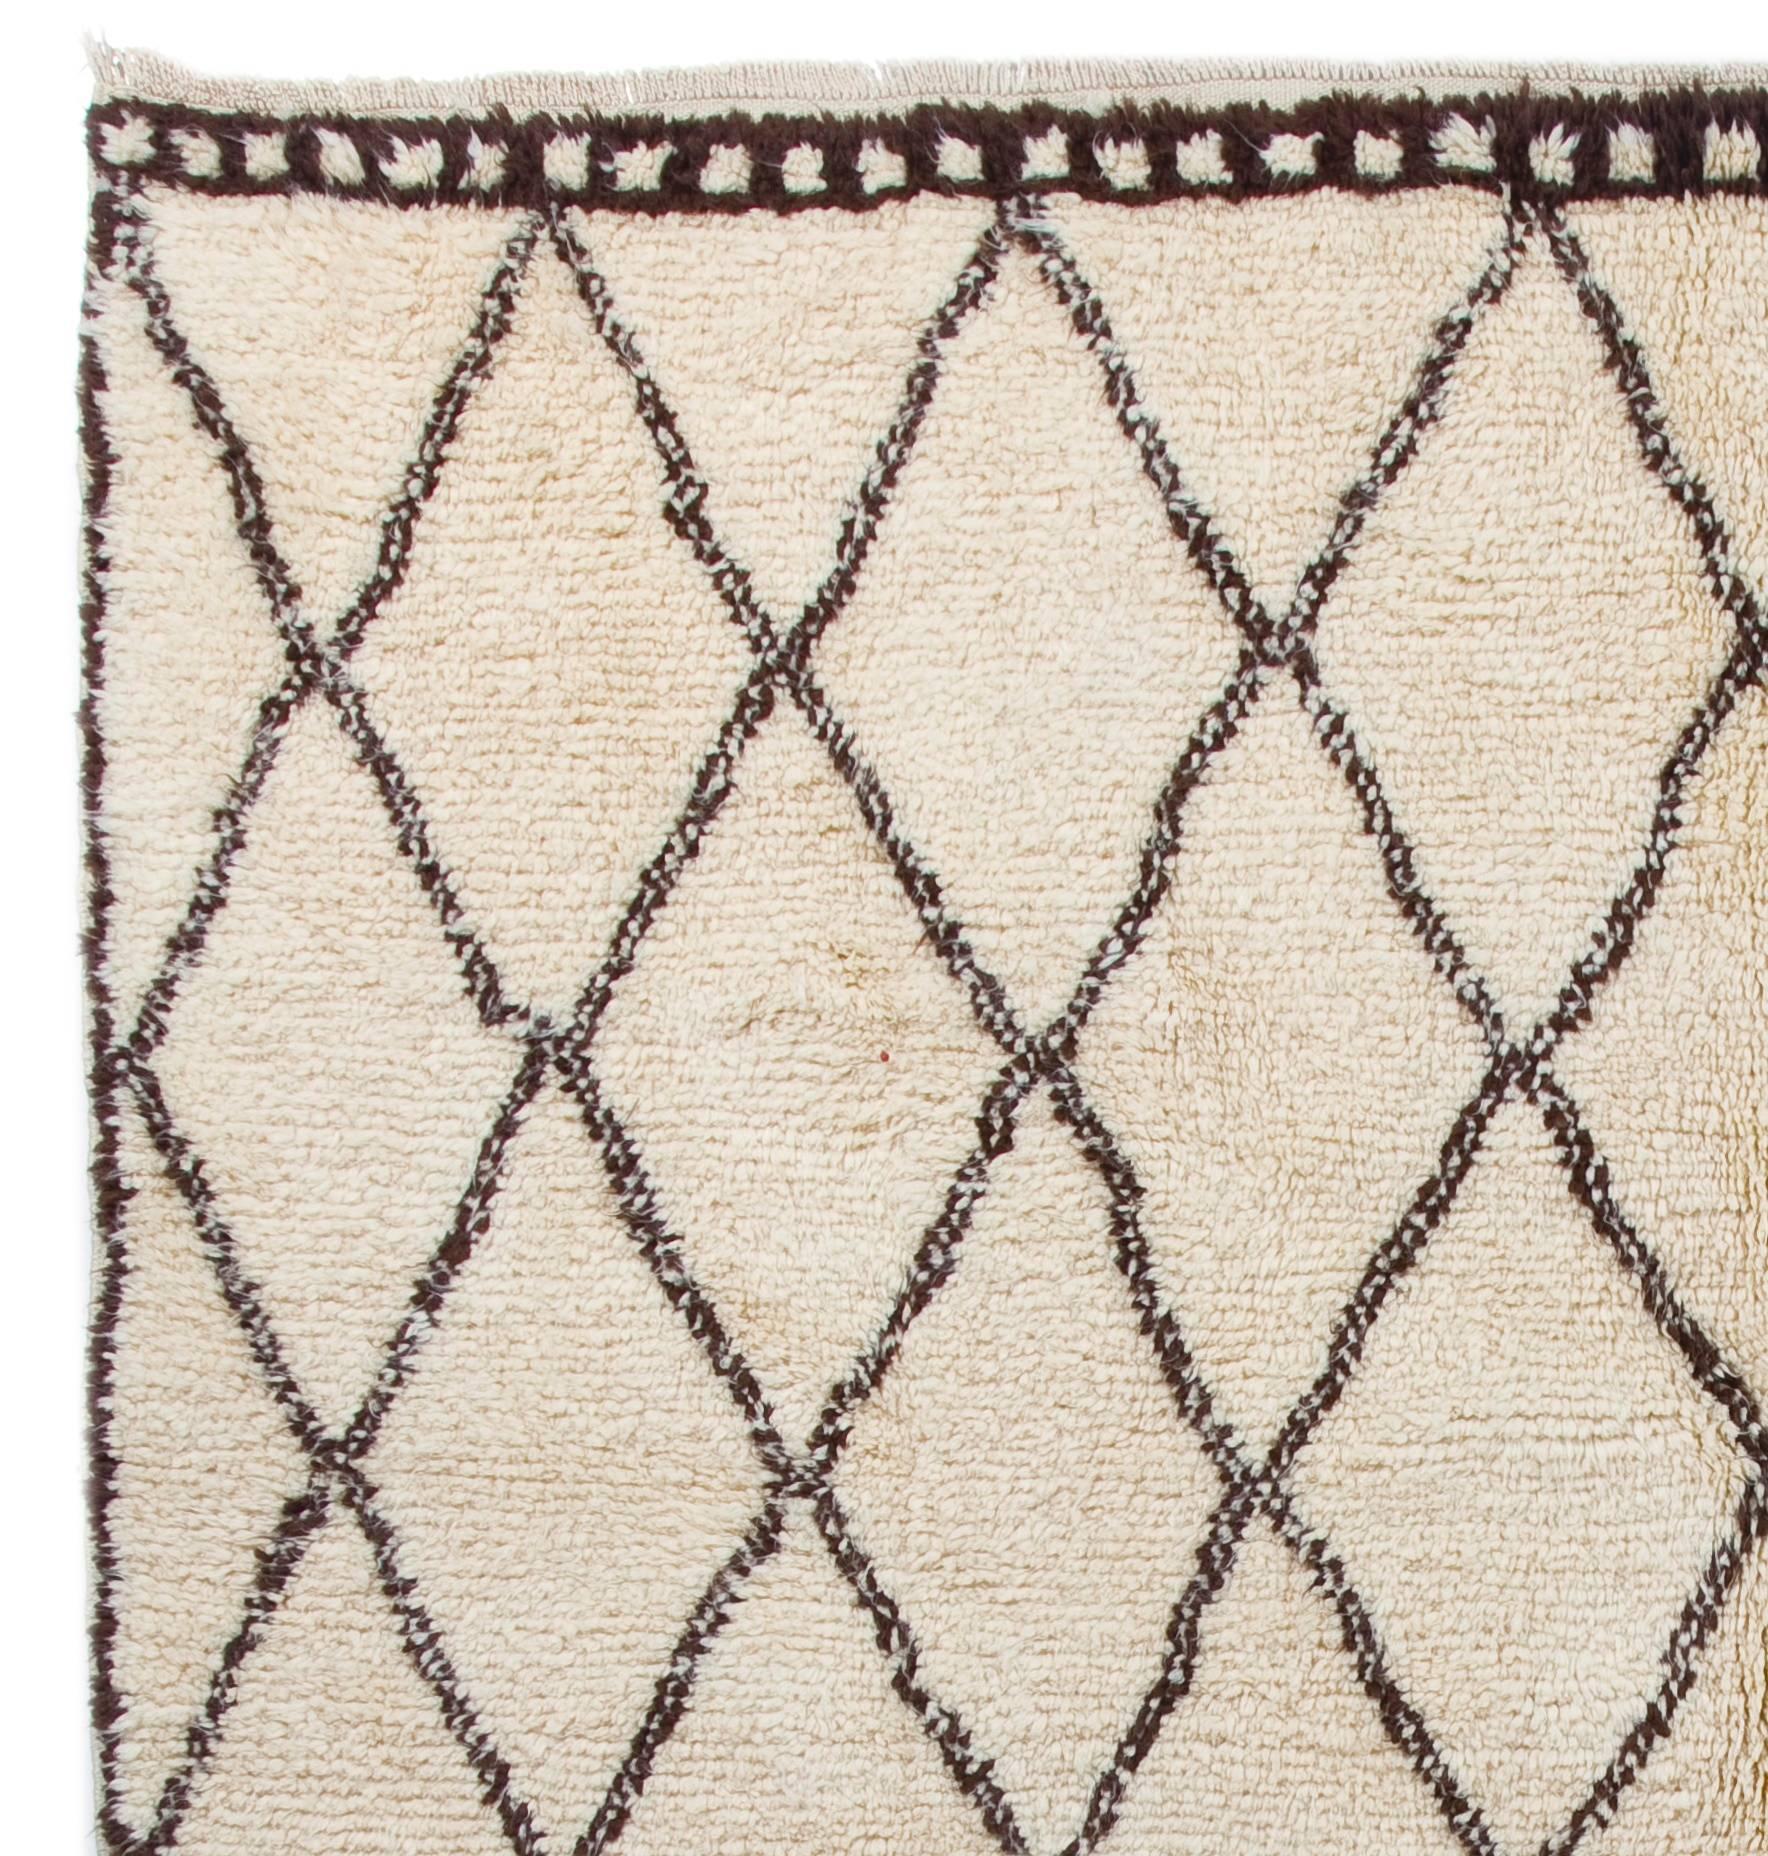 Ein moderner handgeknüpfter marokkanischer Teppich aus ungefärbter Schafwolle in Elfenbein und Braun. 
Sein weicher, glänzender Wollflor ist ideal für Familien mit Kindern und alle, die Gemütlichkeit und Komfort mit einer modernen, minimalistischen